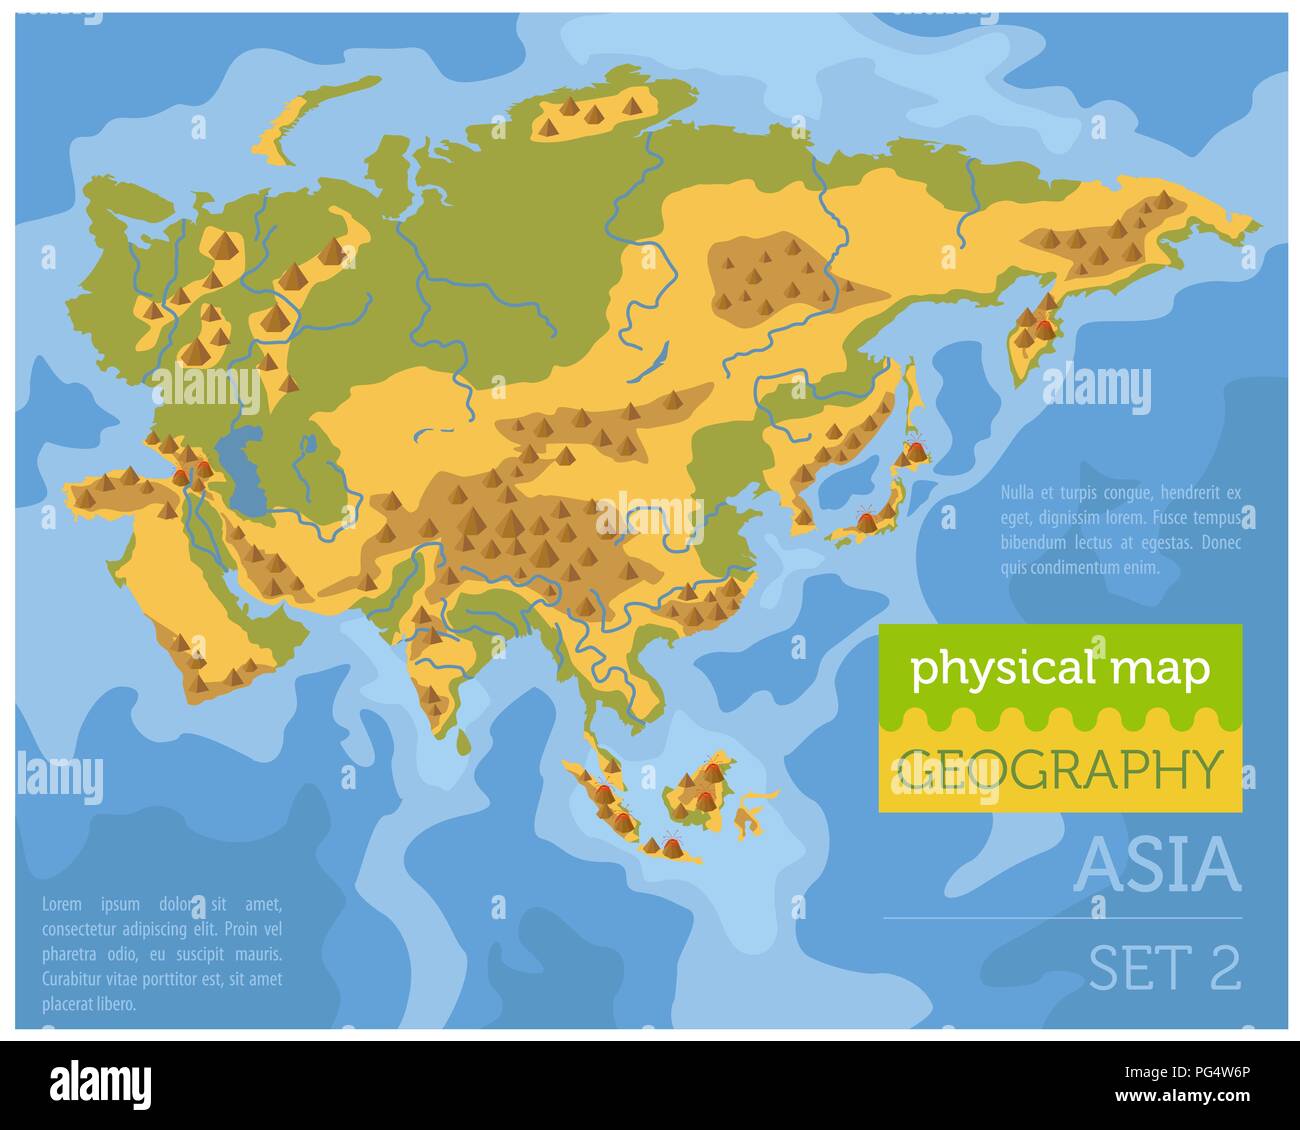 Appartamento Asia mappa fisica degli elementi del costruttore sulla superficie dell'acqua. Costruire la propria geografia infographics collection. Illustrazione Vettoriale Illustrazione Vettoriale